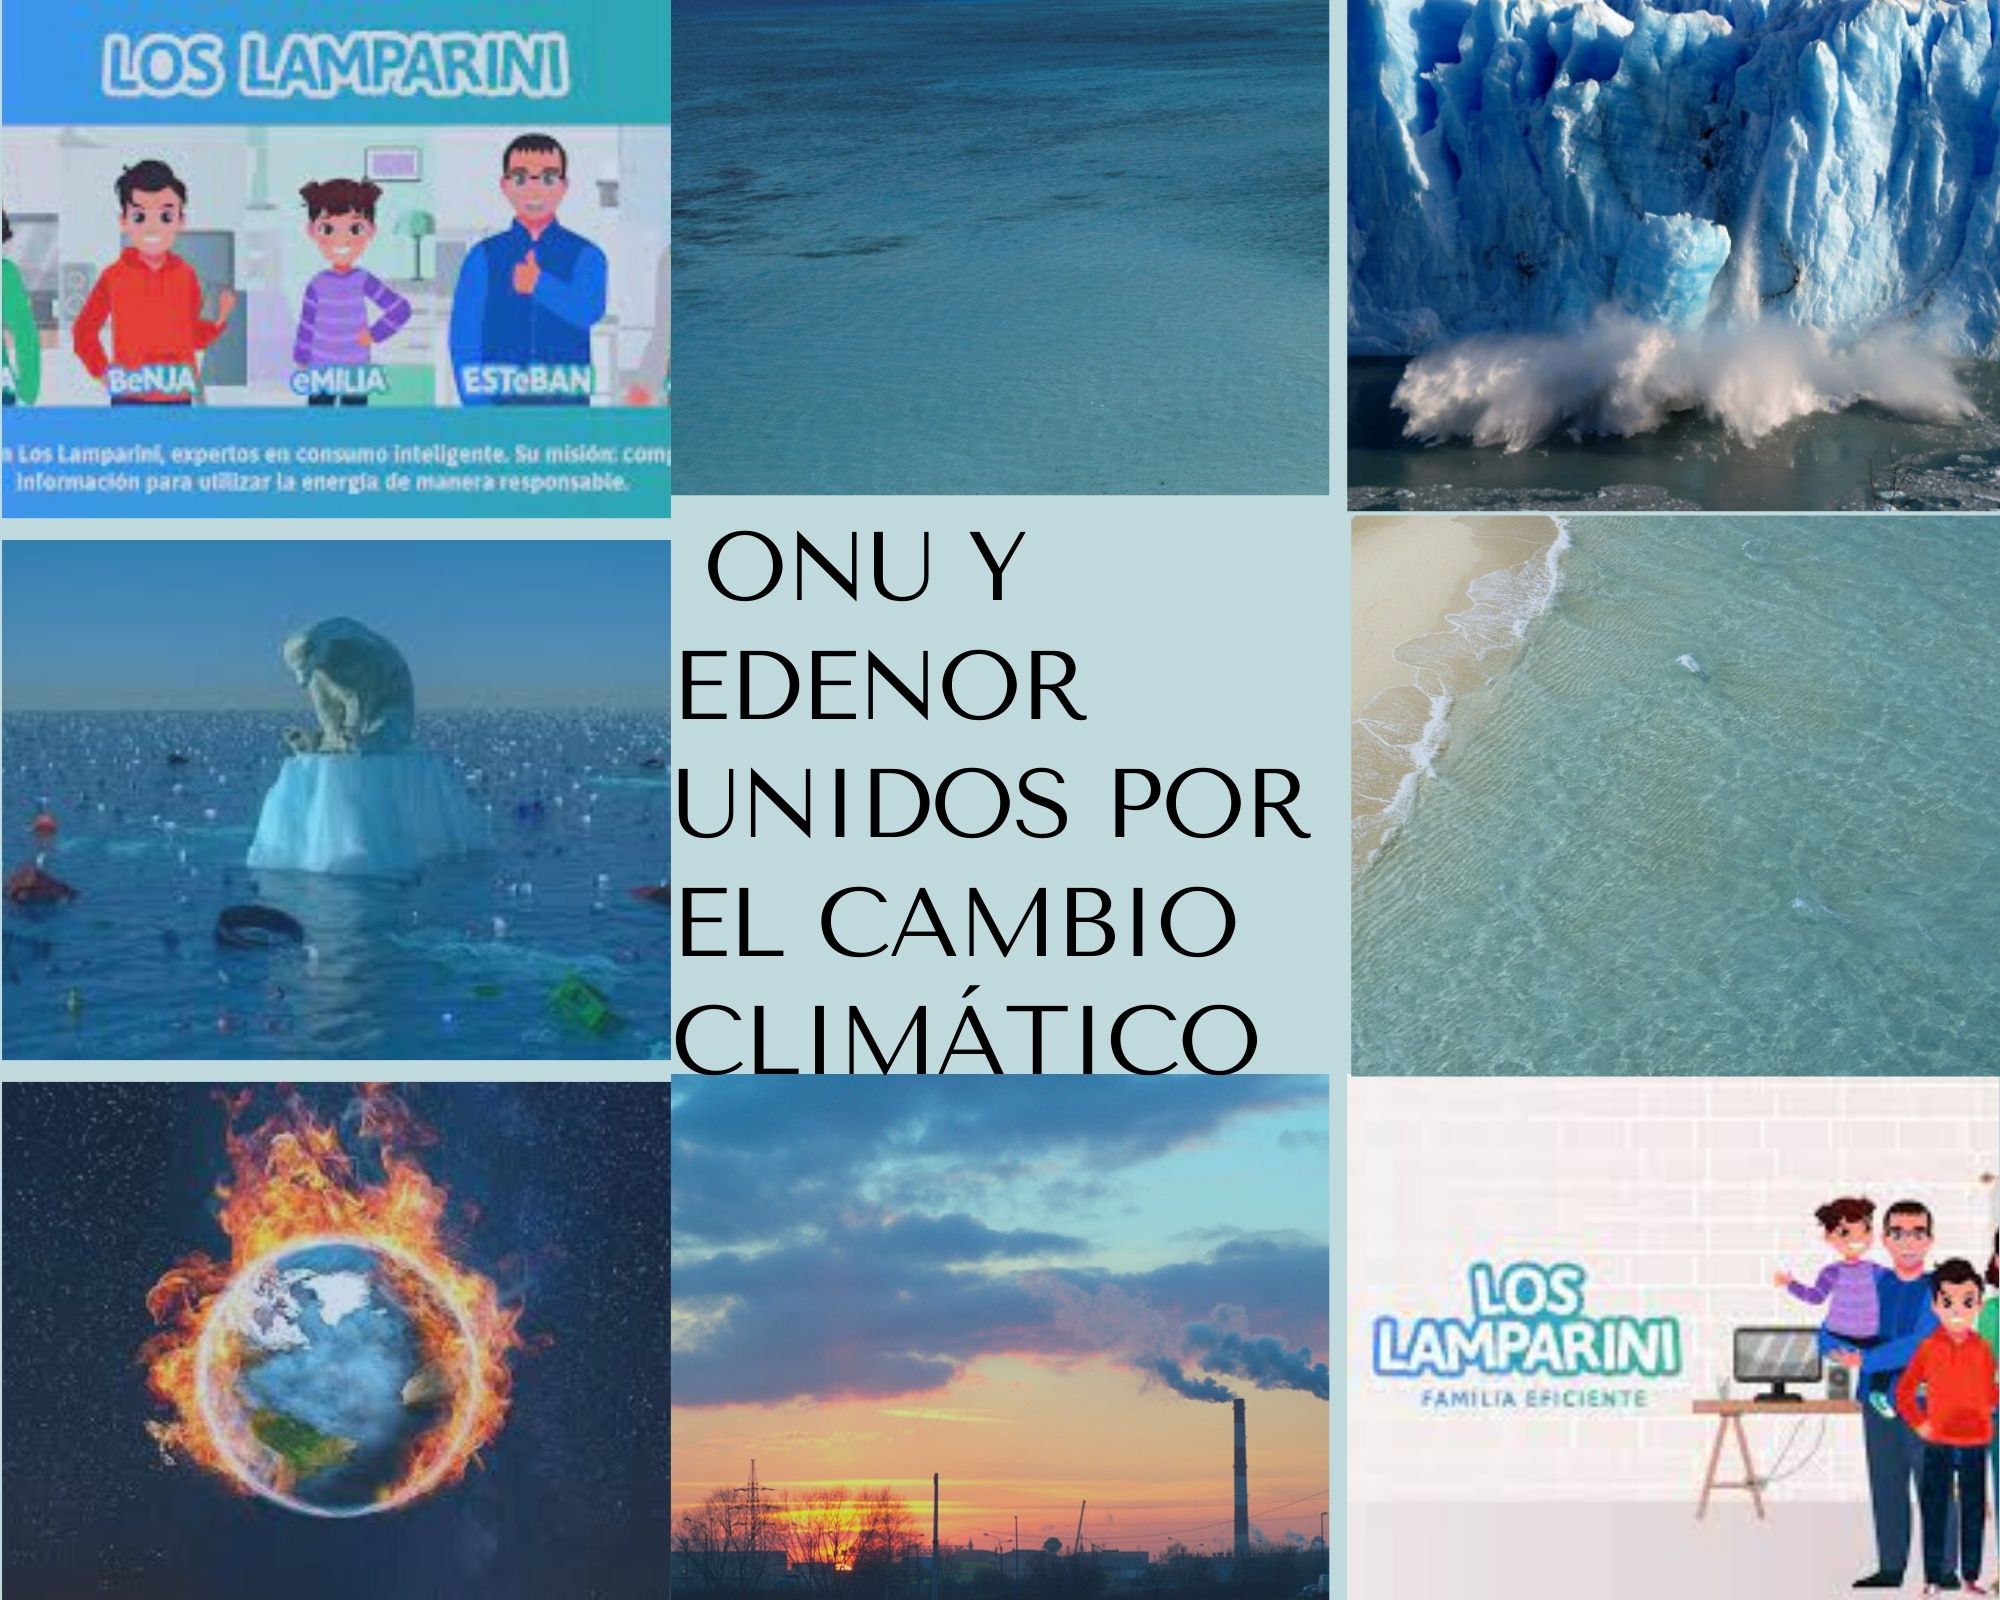 Cambio climático I Edenor y ONU Argentina unidos por una buena causa